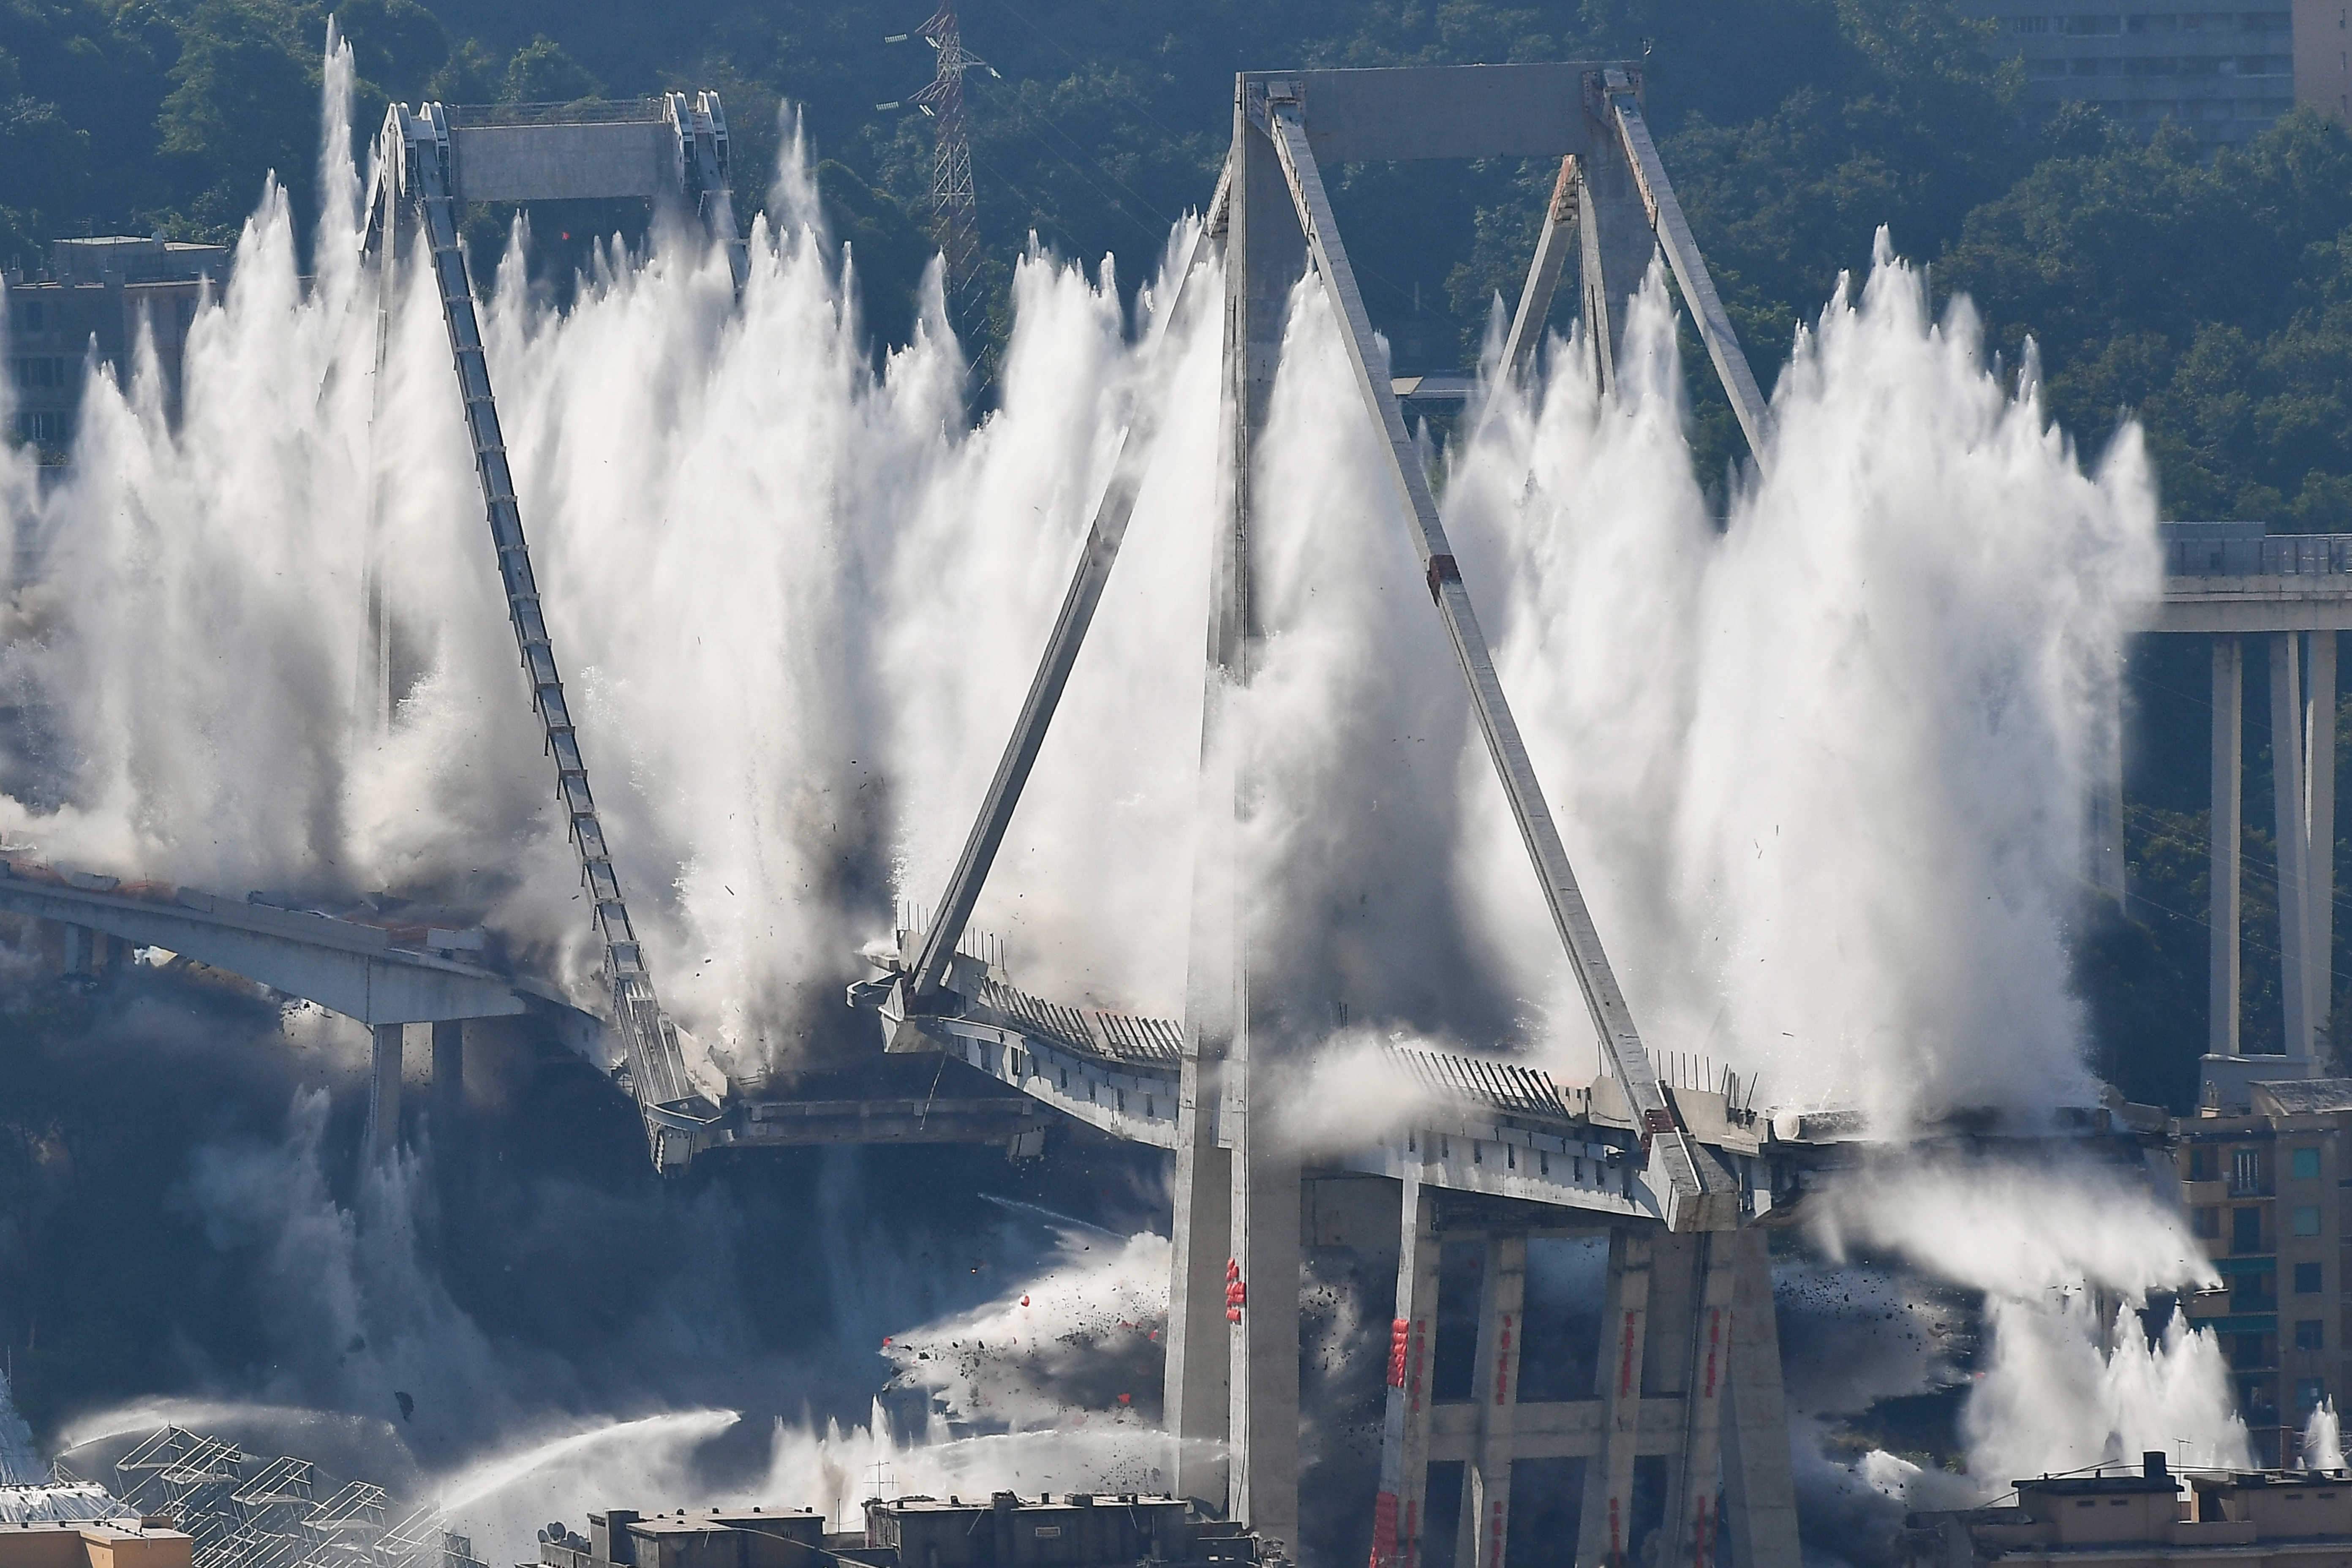 Felrobbantották a tavaly leomlott genovai híd megmaradt pilléreit